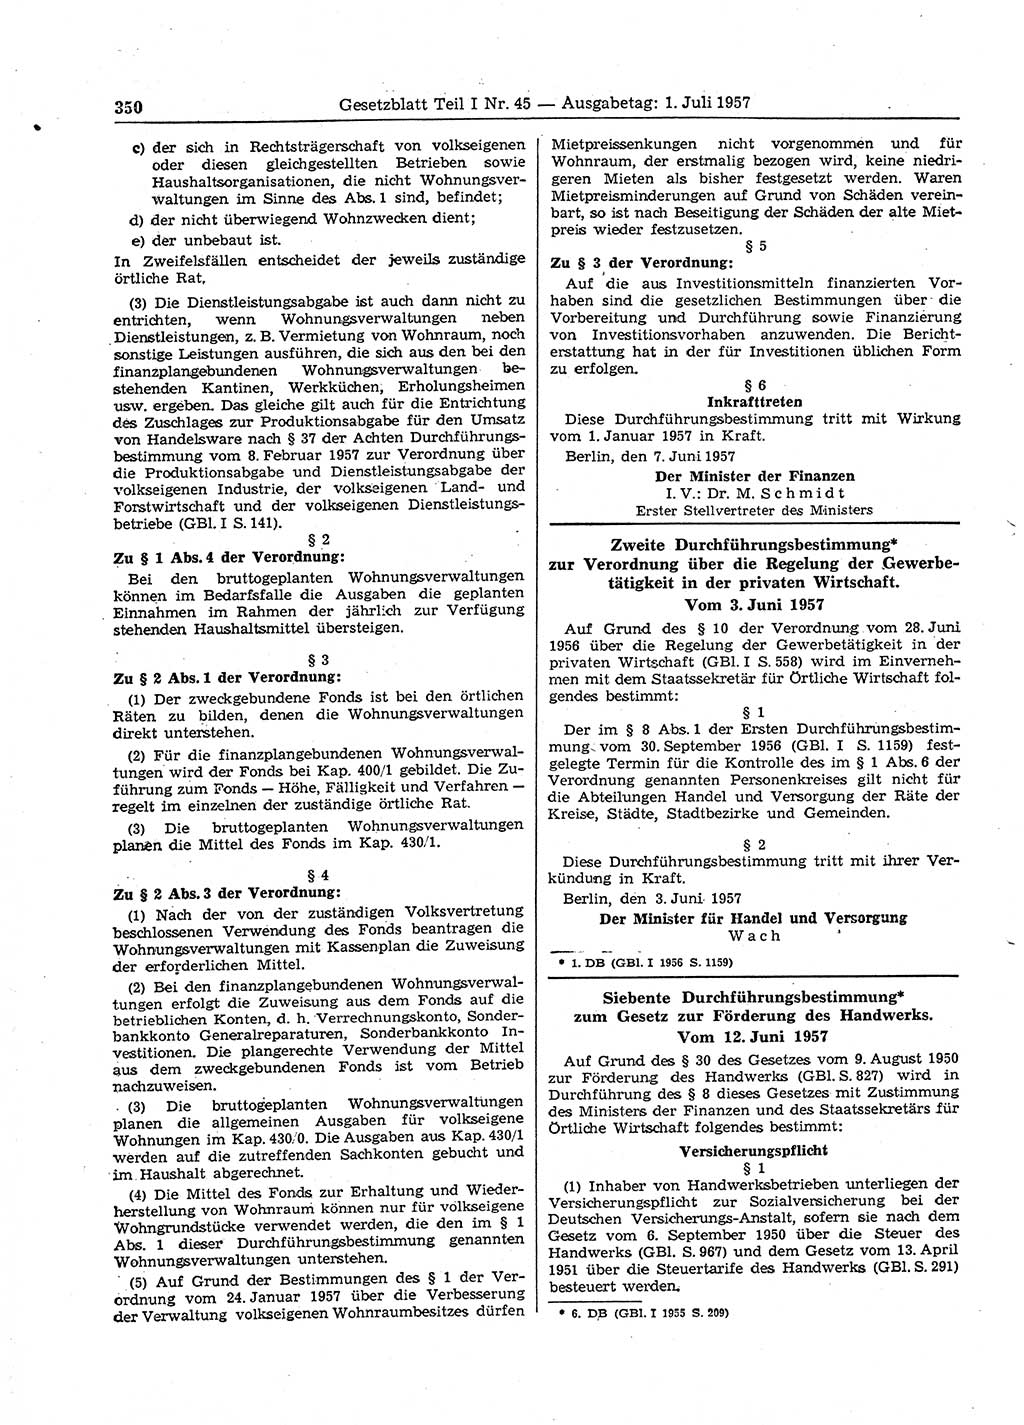 Gesetzblatt (GBl.) der Deutschen Demokratischen Republik (DDR) Teil Ⅰ 1957, Seite 350 (GBl. DDR Ⅰ 1957, S. 350)